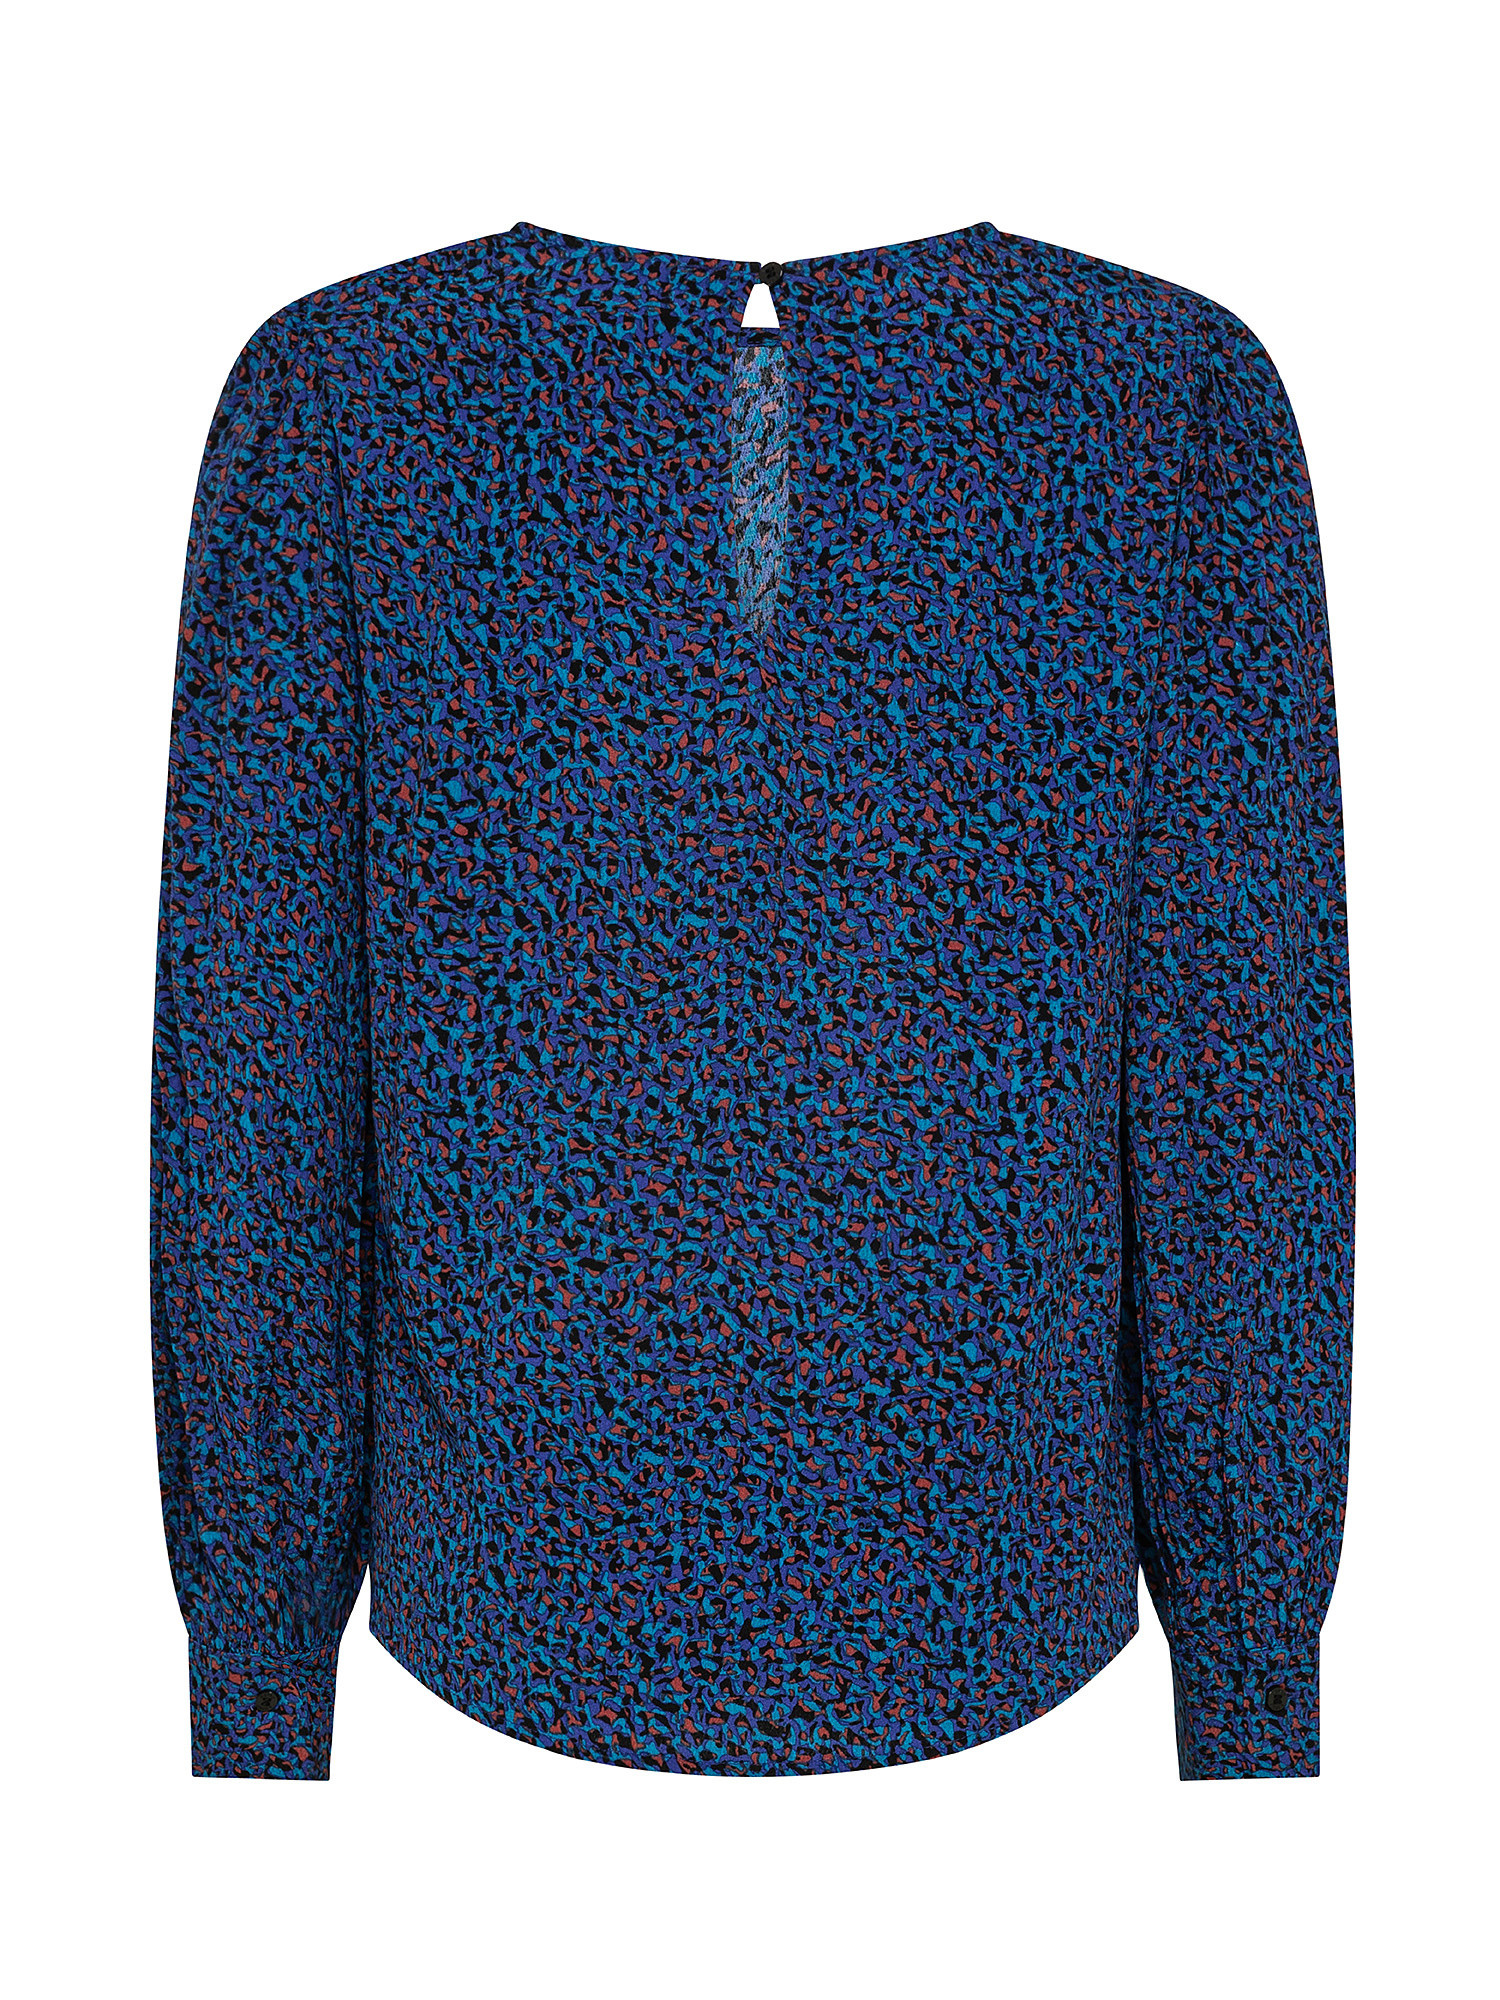 Patterned blouse, Dark Blue, large image number 1